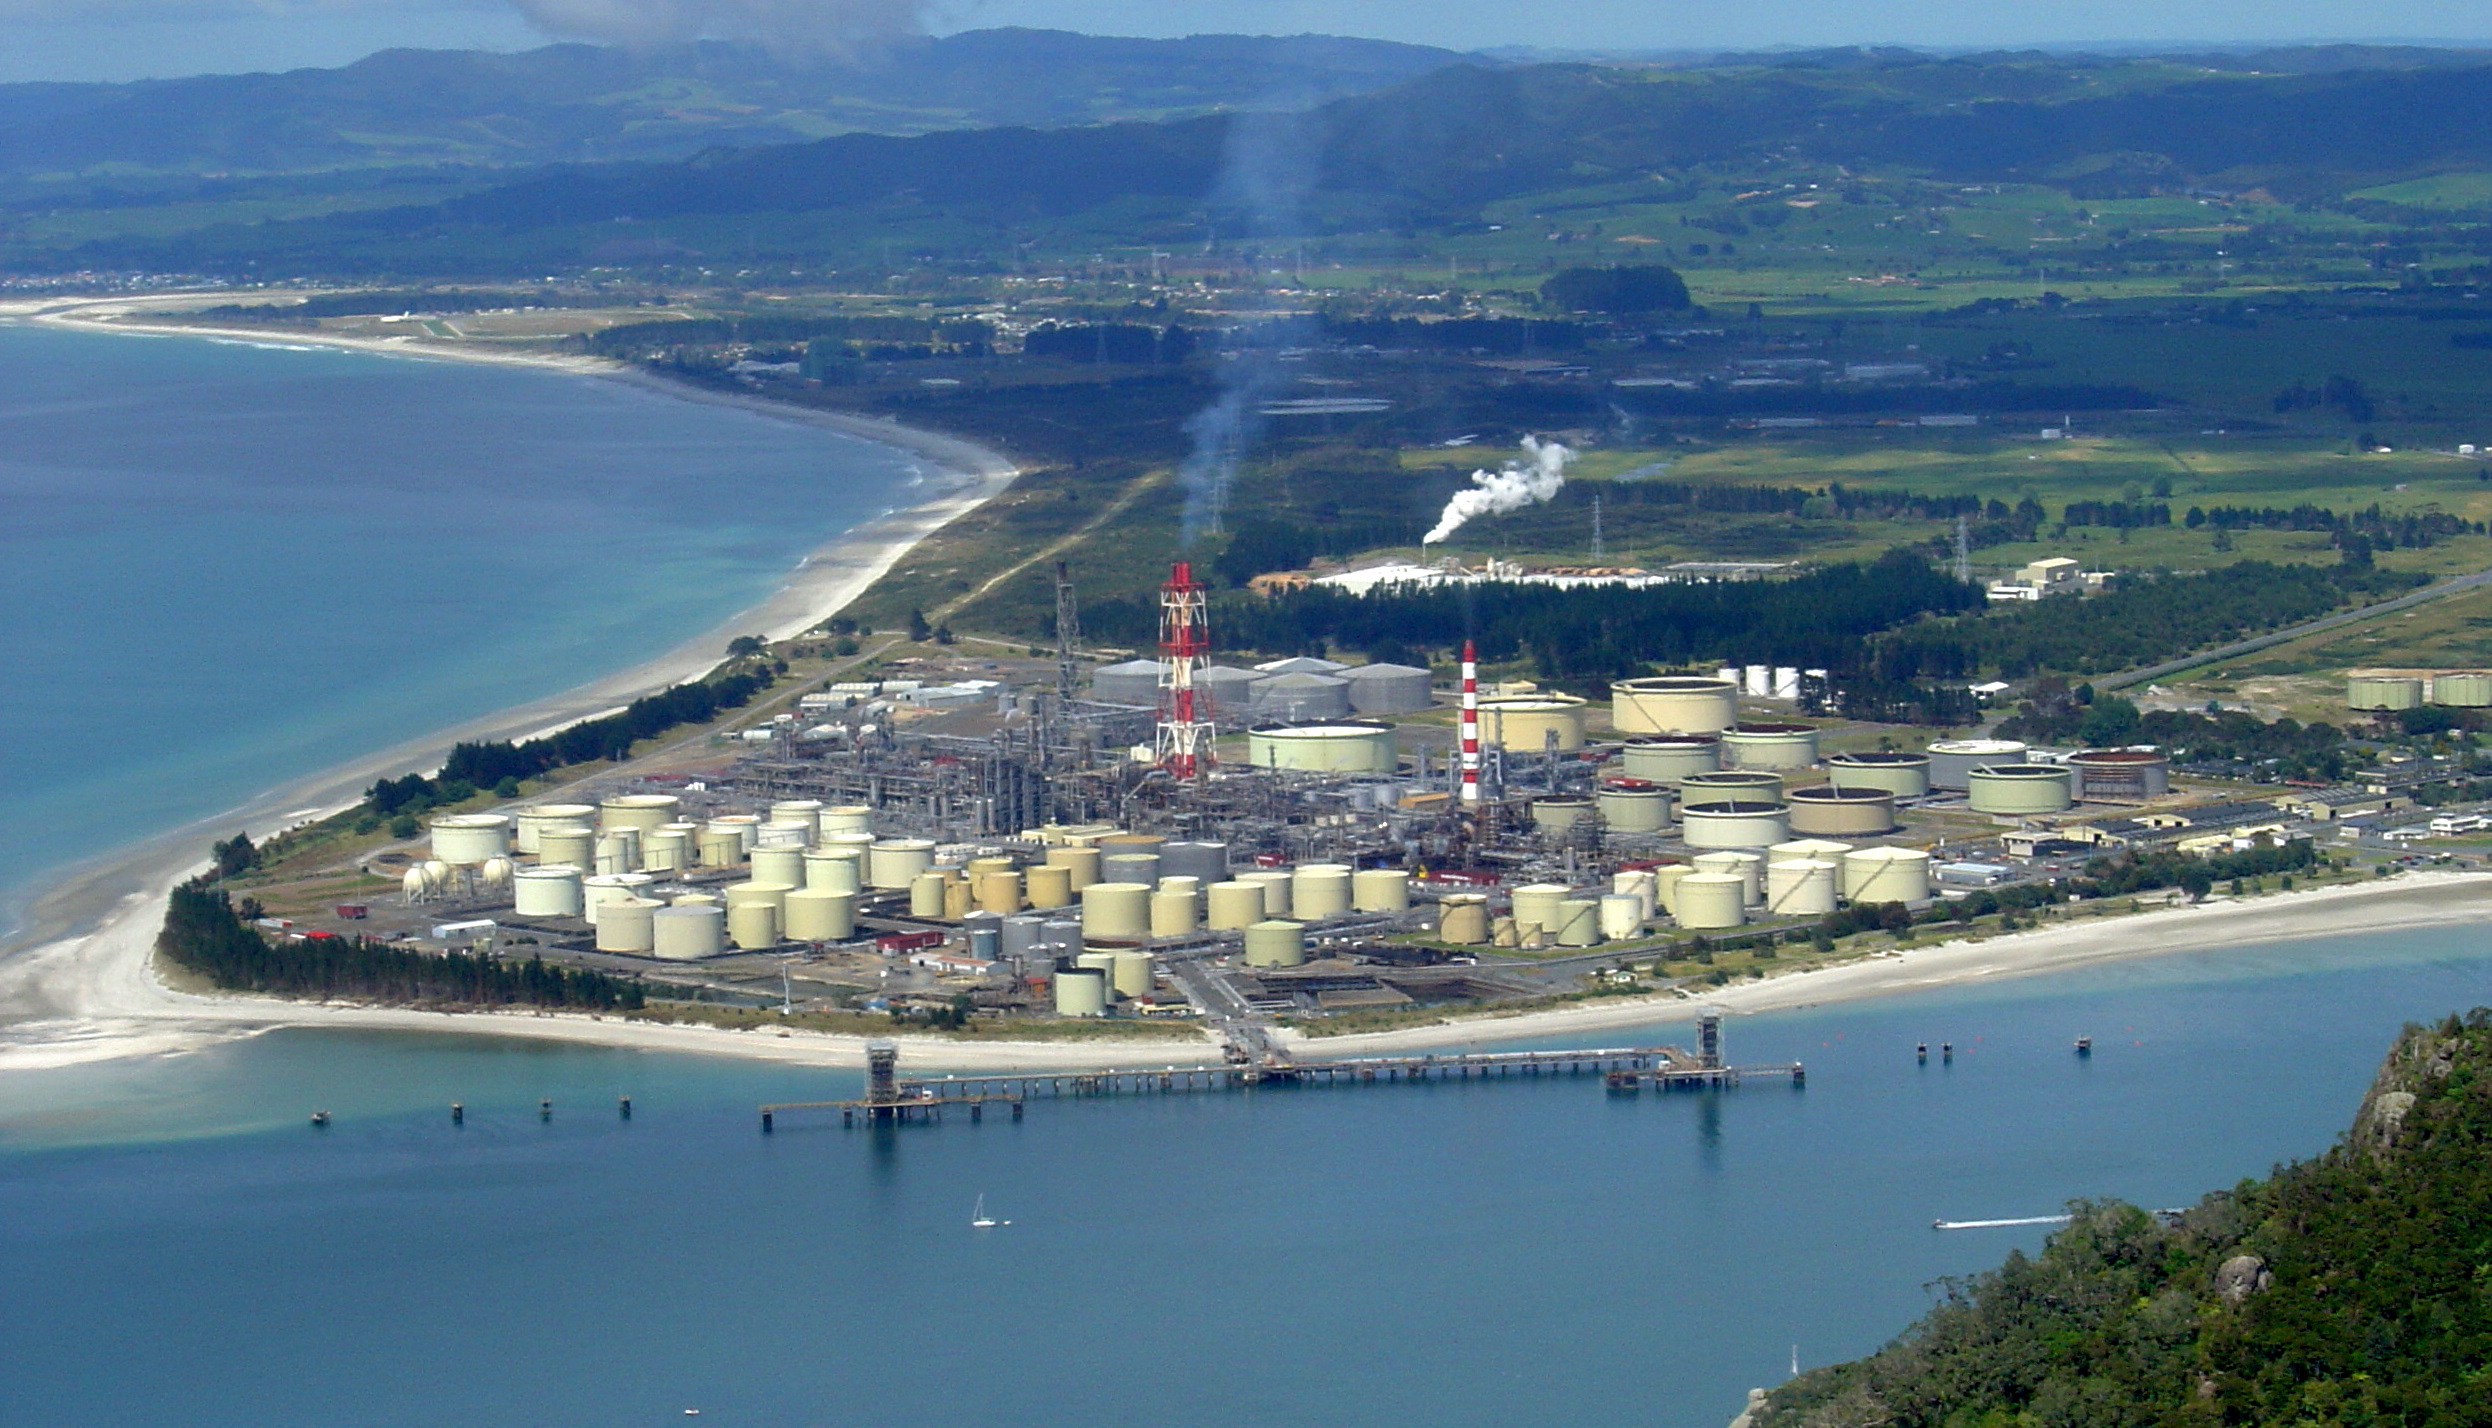 Fortescue estuda distribuição de hidrogênio verde em rede de gás na Nova Zelândia. Na imagem, refinaria de petróleo Marsden Point, na Nova Zelândia, vista do topo do Monte Manaia